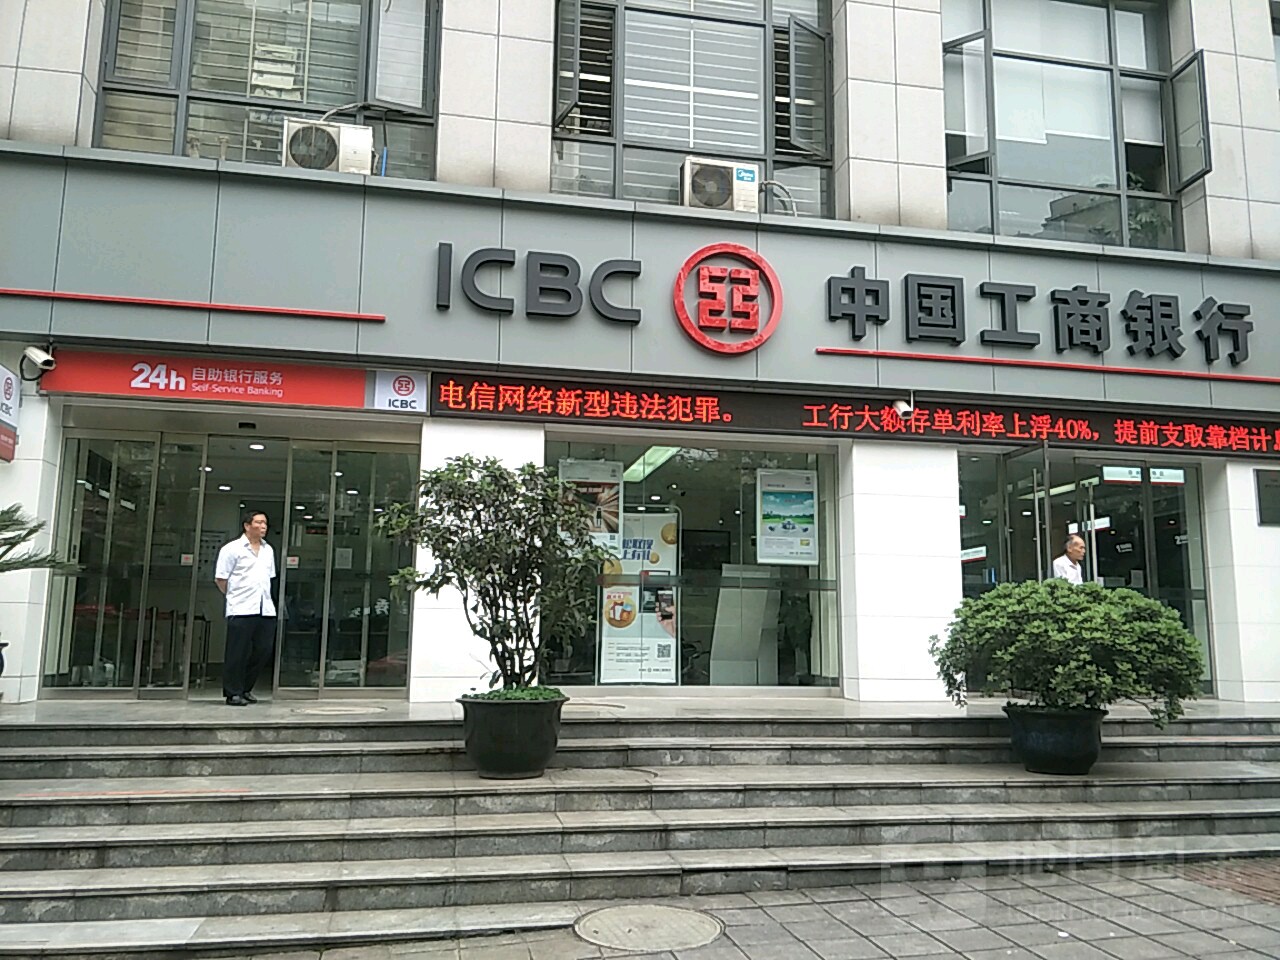 中国工商银行24小时自助银行.(重庆北碚支行)